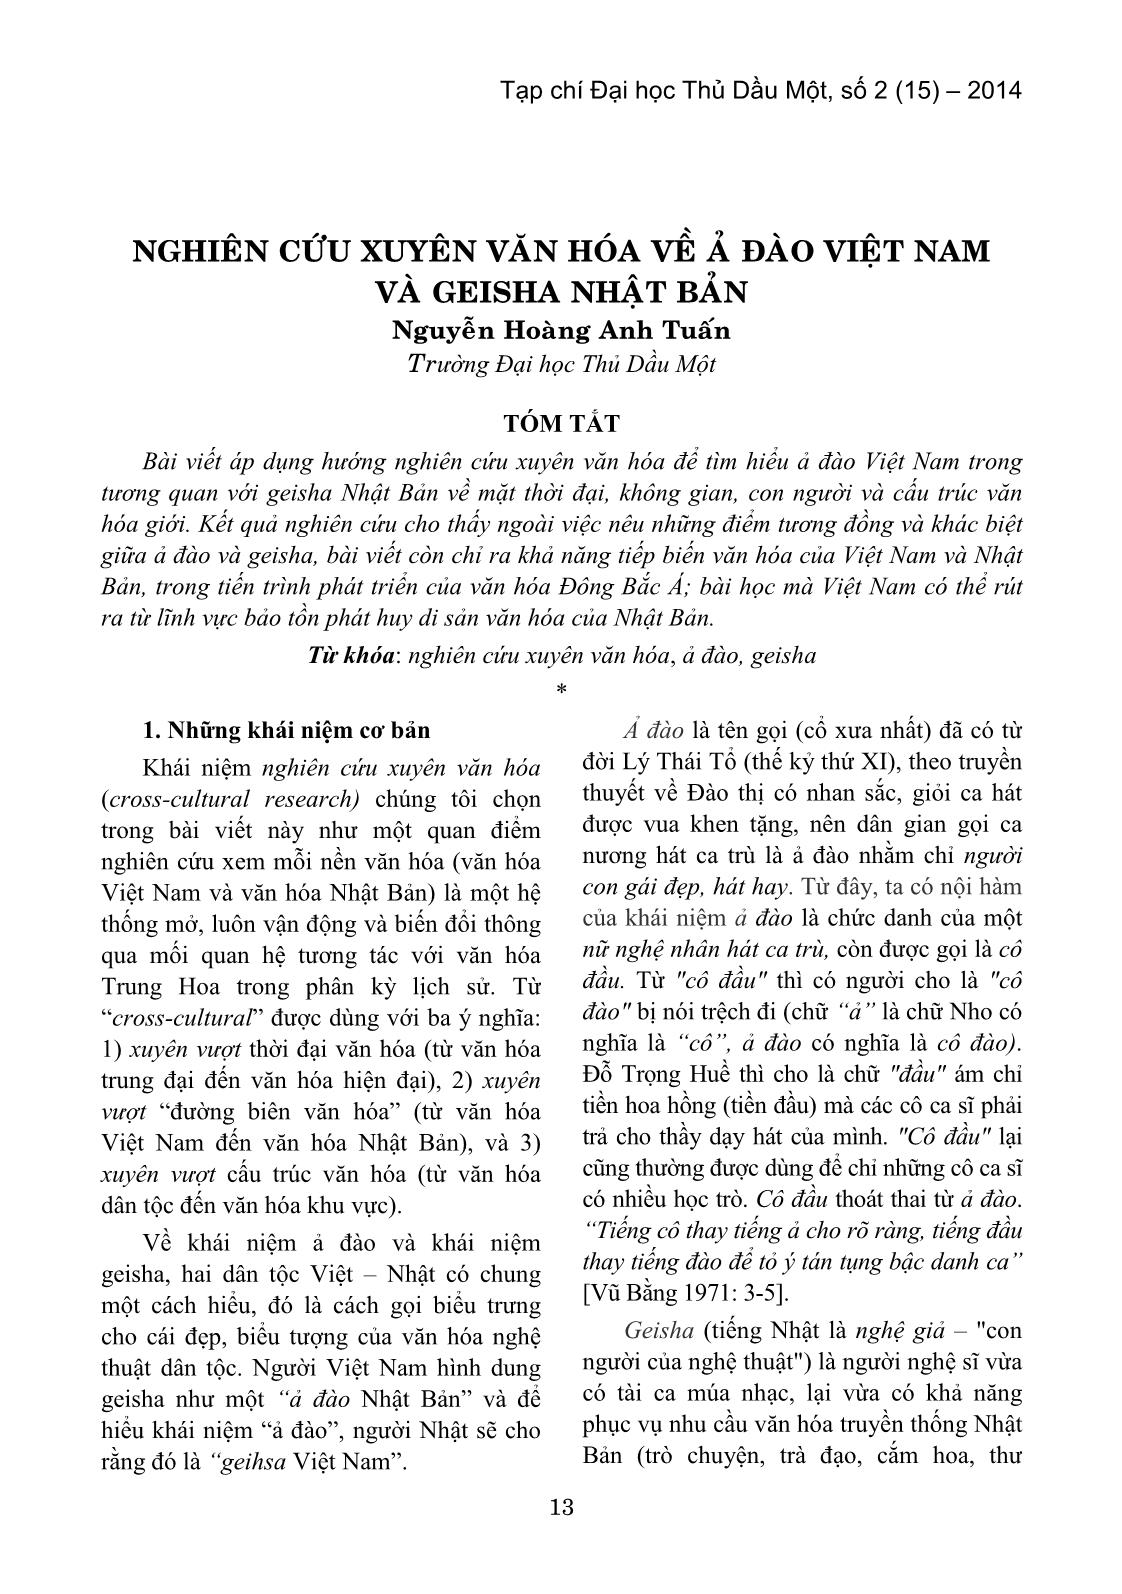 Nghiên cứu xuyên văn hóa về ả đào Việt Nam và Geisha nhật bản trang 1